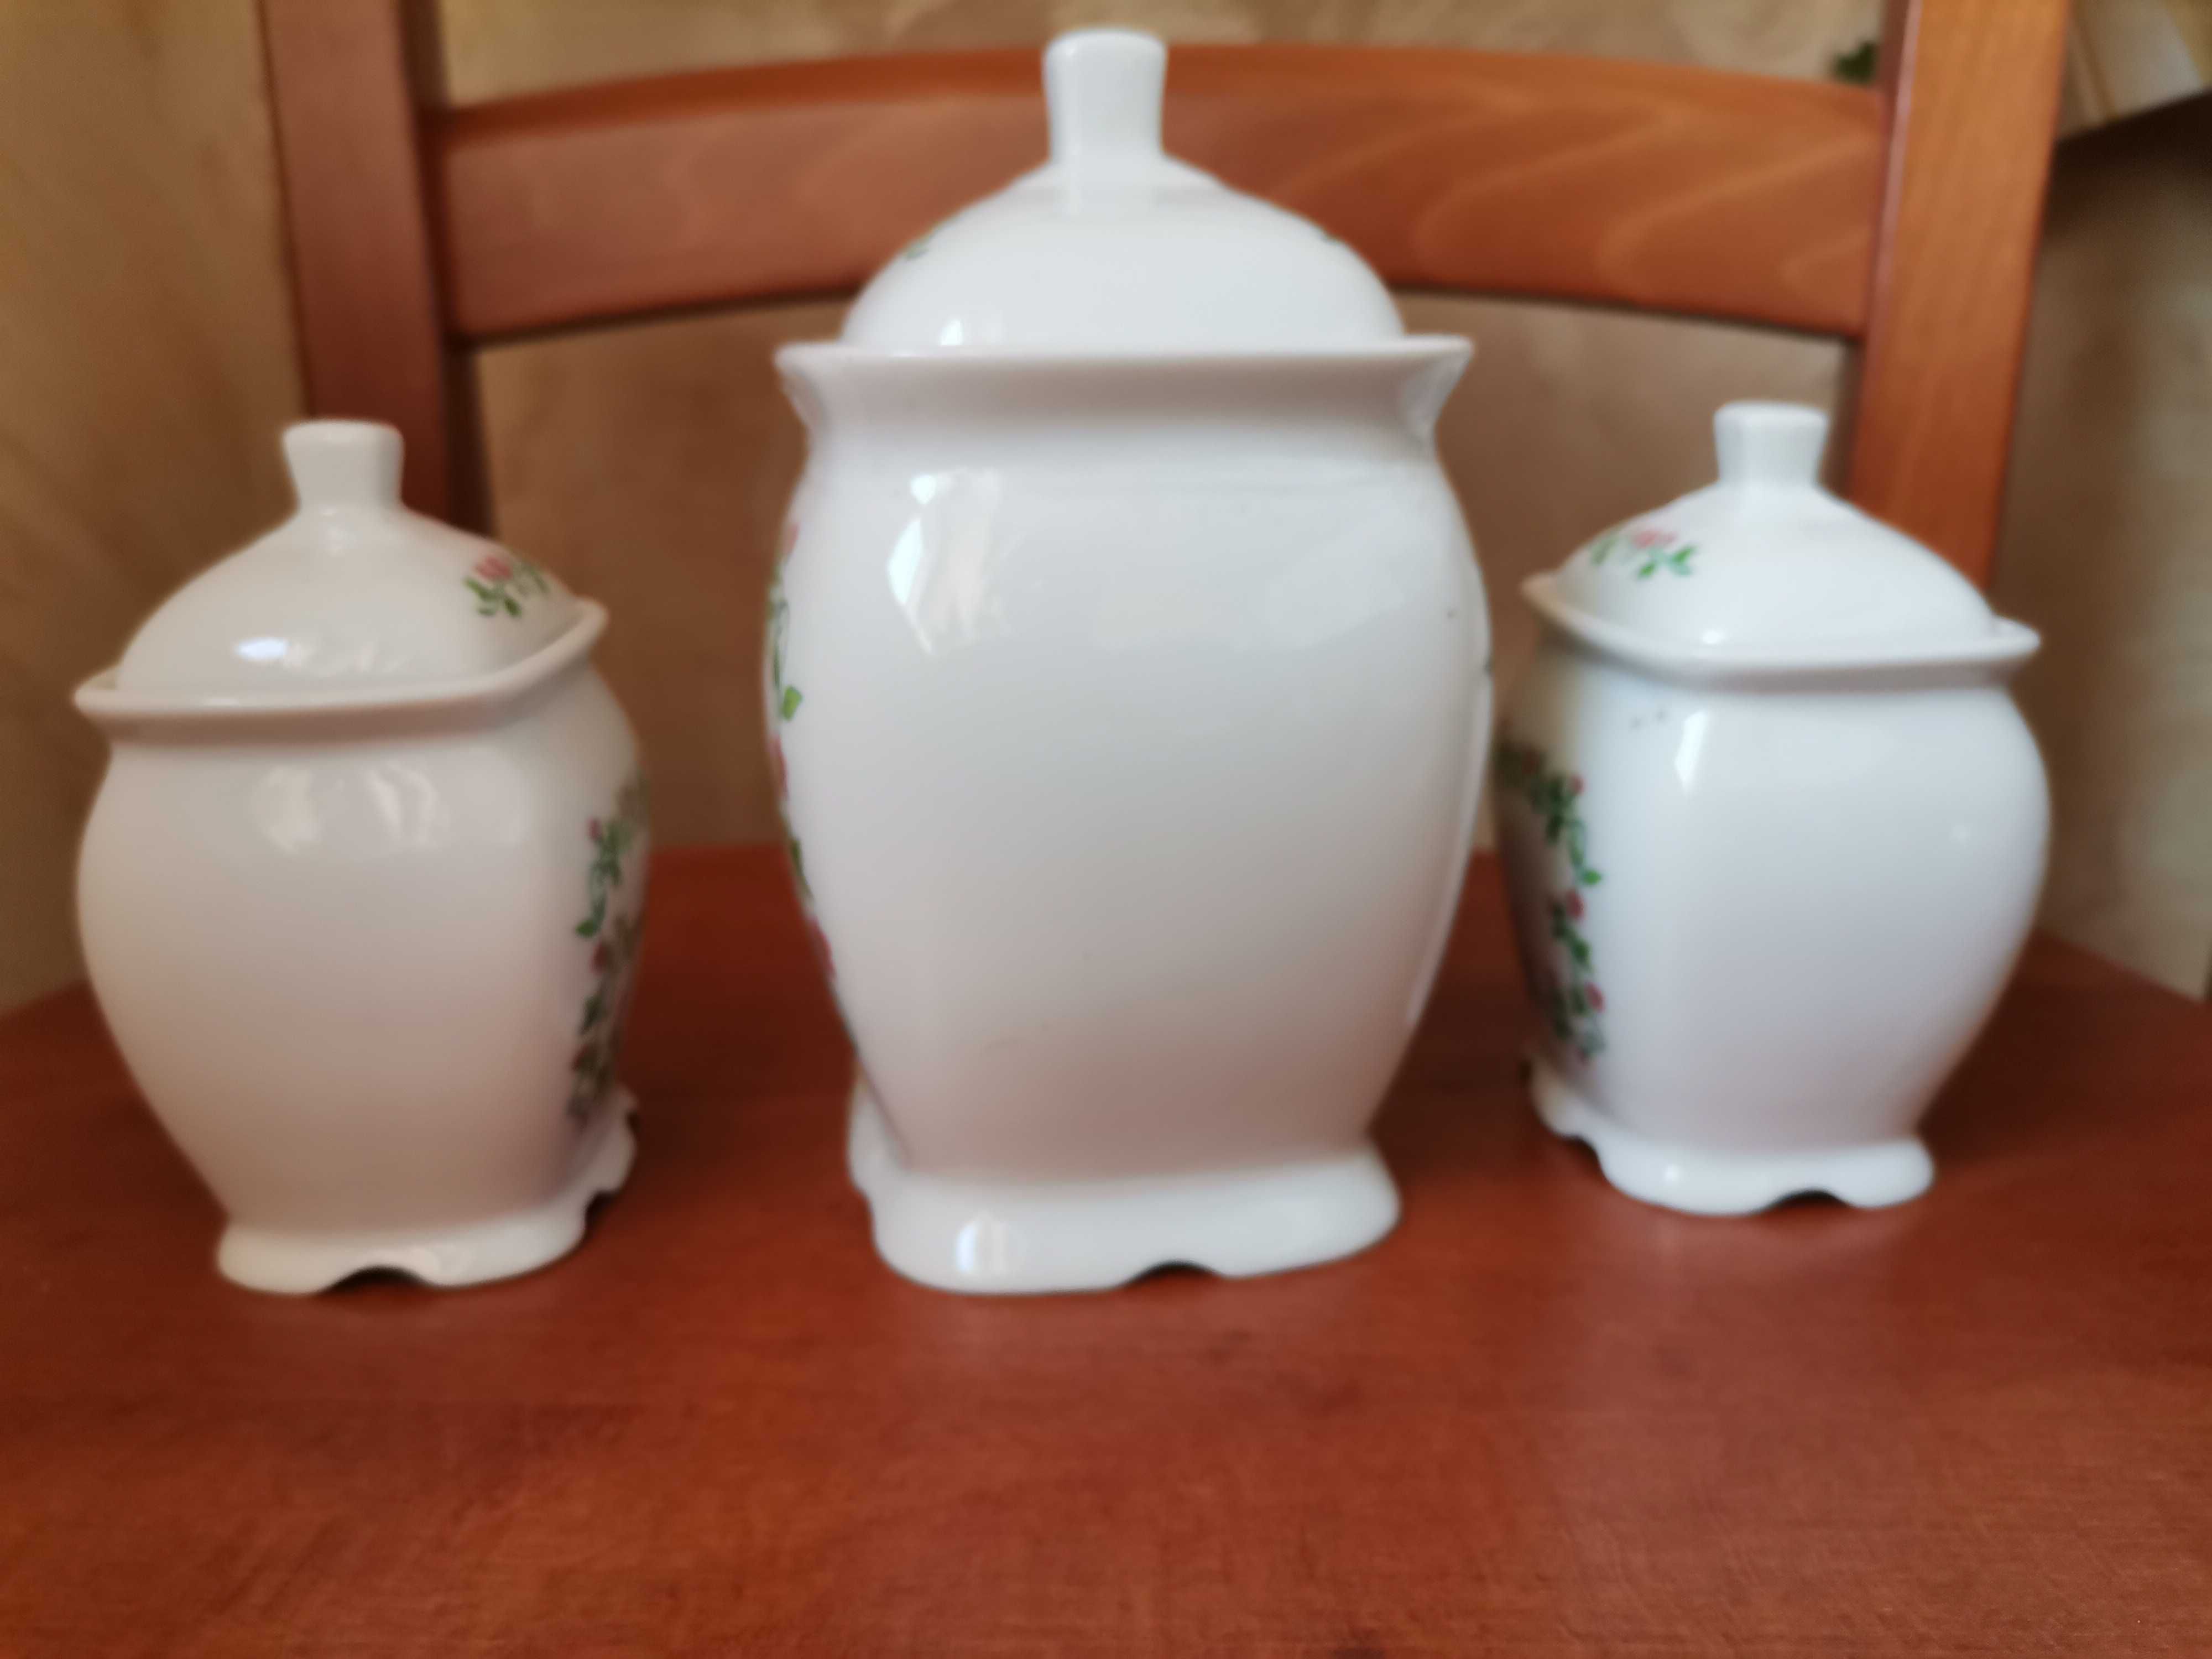 Trzy ceramiczne pojemniczki na przyprawy